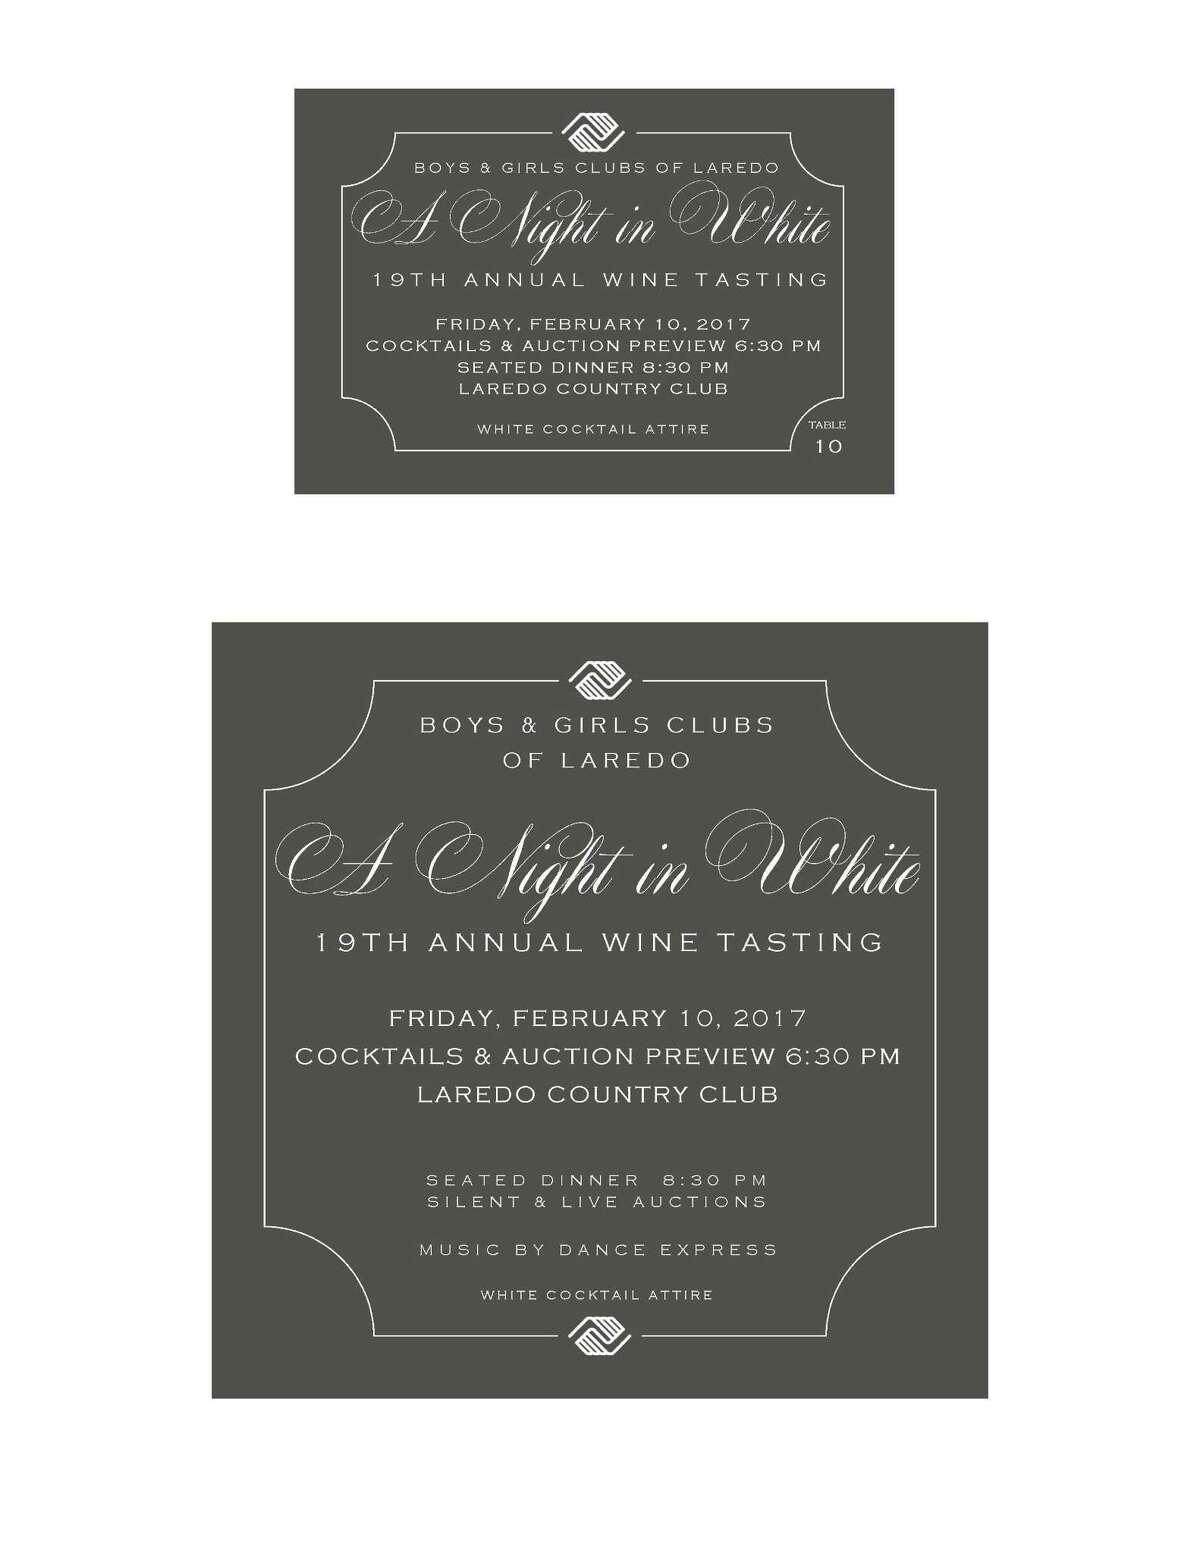 La invitación formal a la gala para la cata de vino a beneficion del Boys and Girls Club of Laredo.